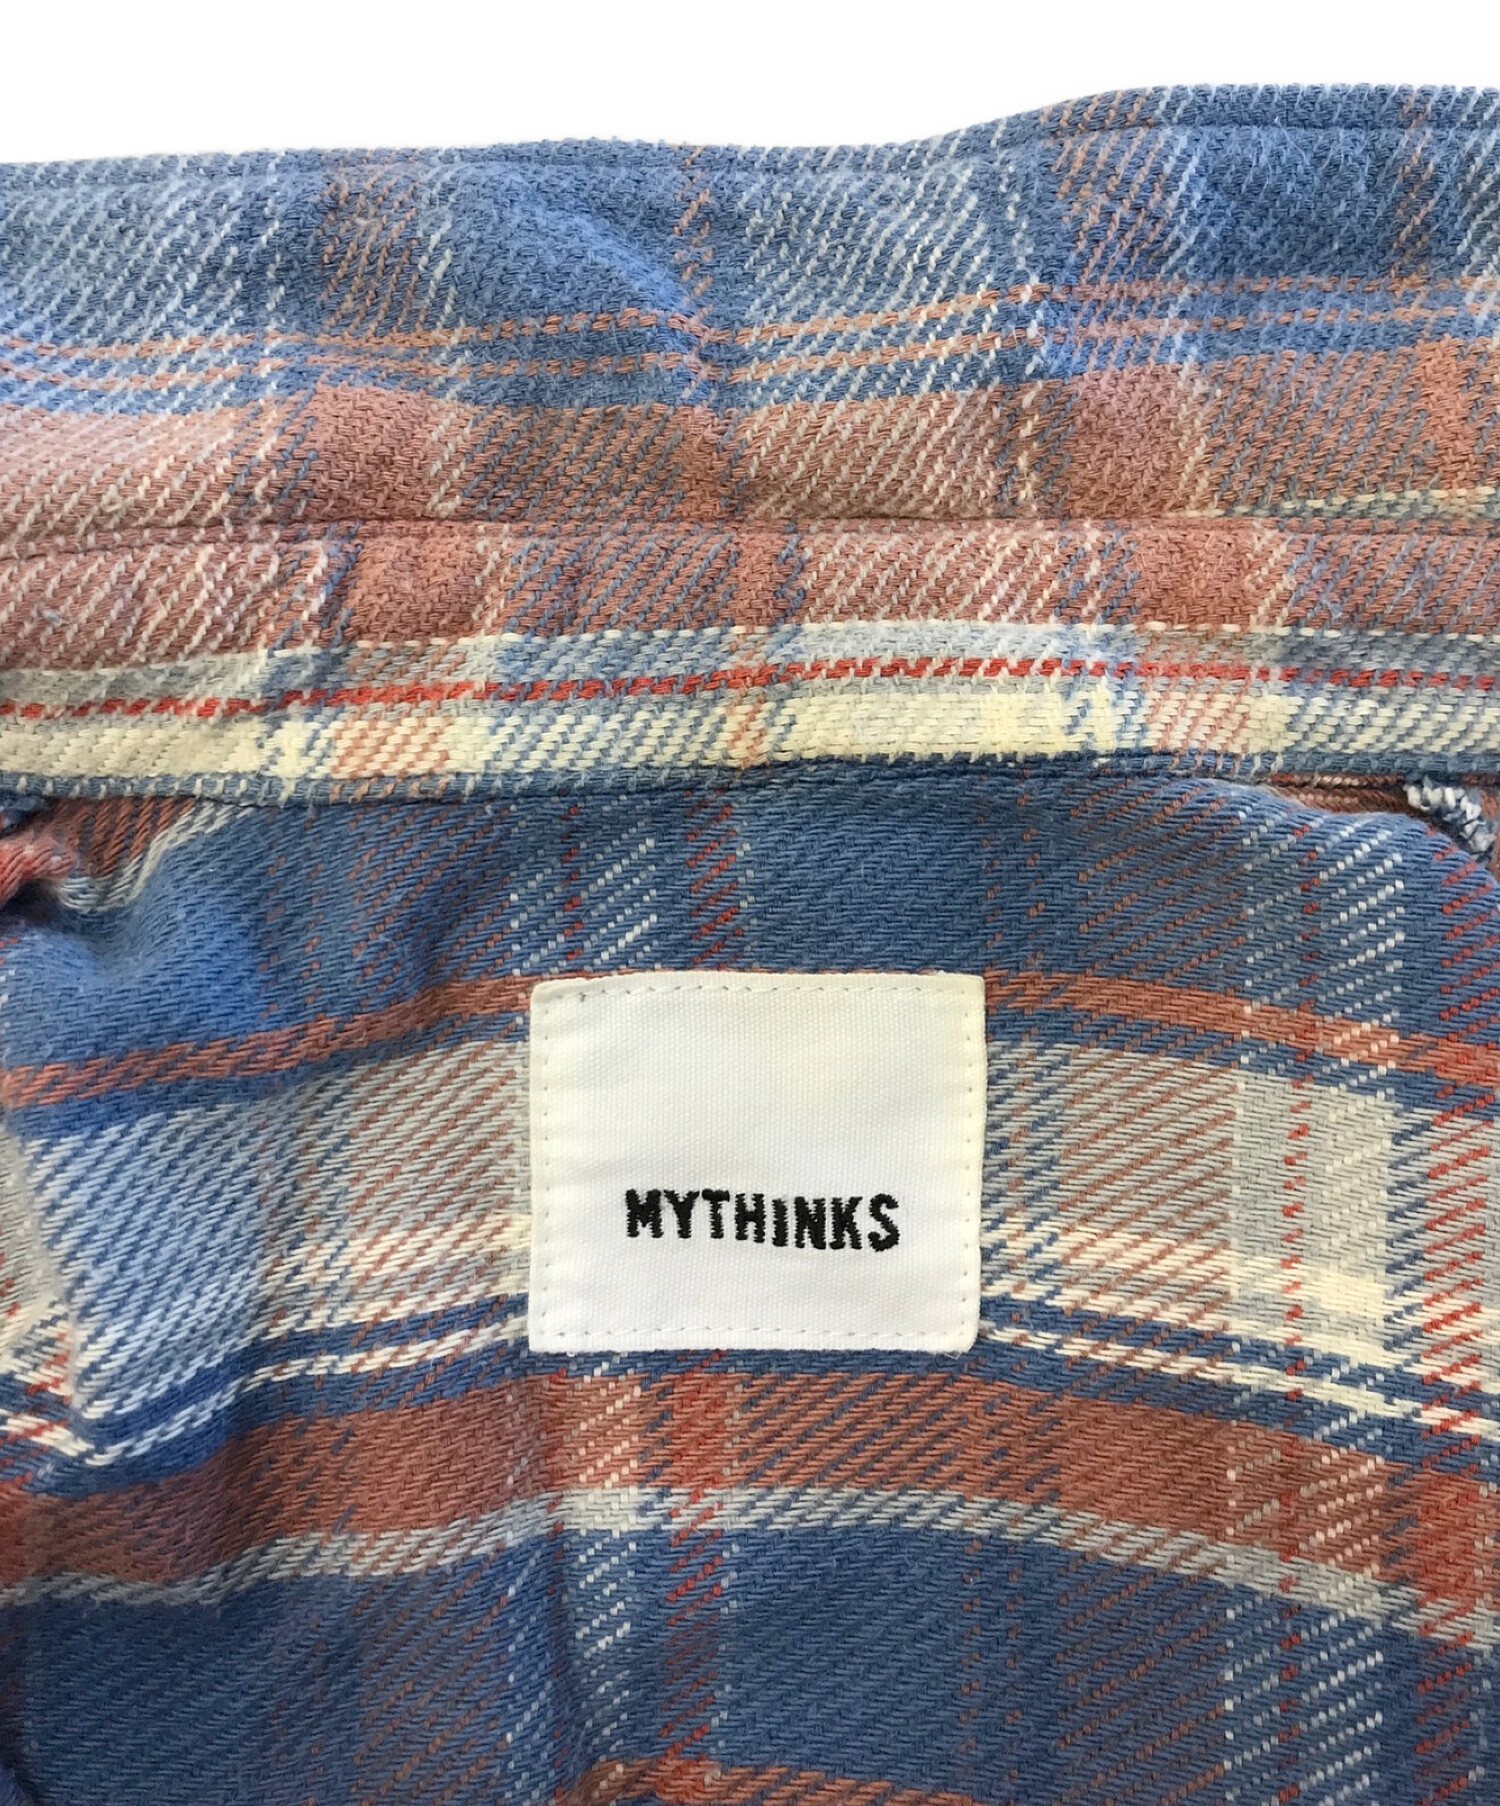 MYTHINKS (マイシンクス) カットオフネルシャツ オレンジ×スカイブルー サイズ:S